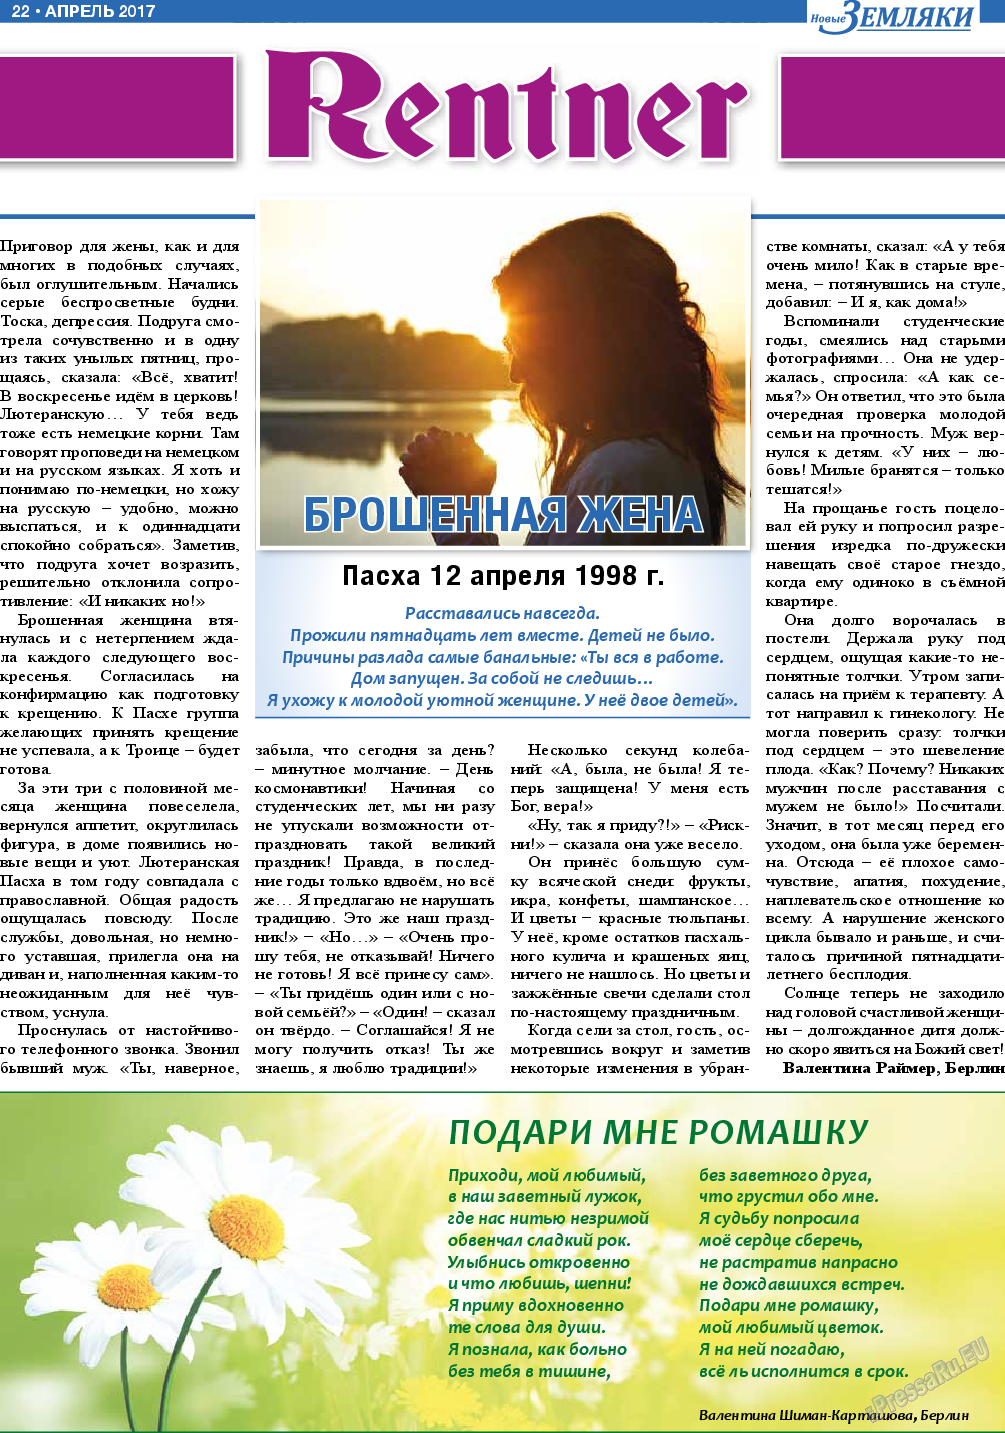 Новые Земляки, газета. 2017 №4 стр.22